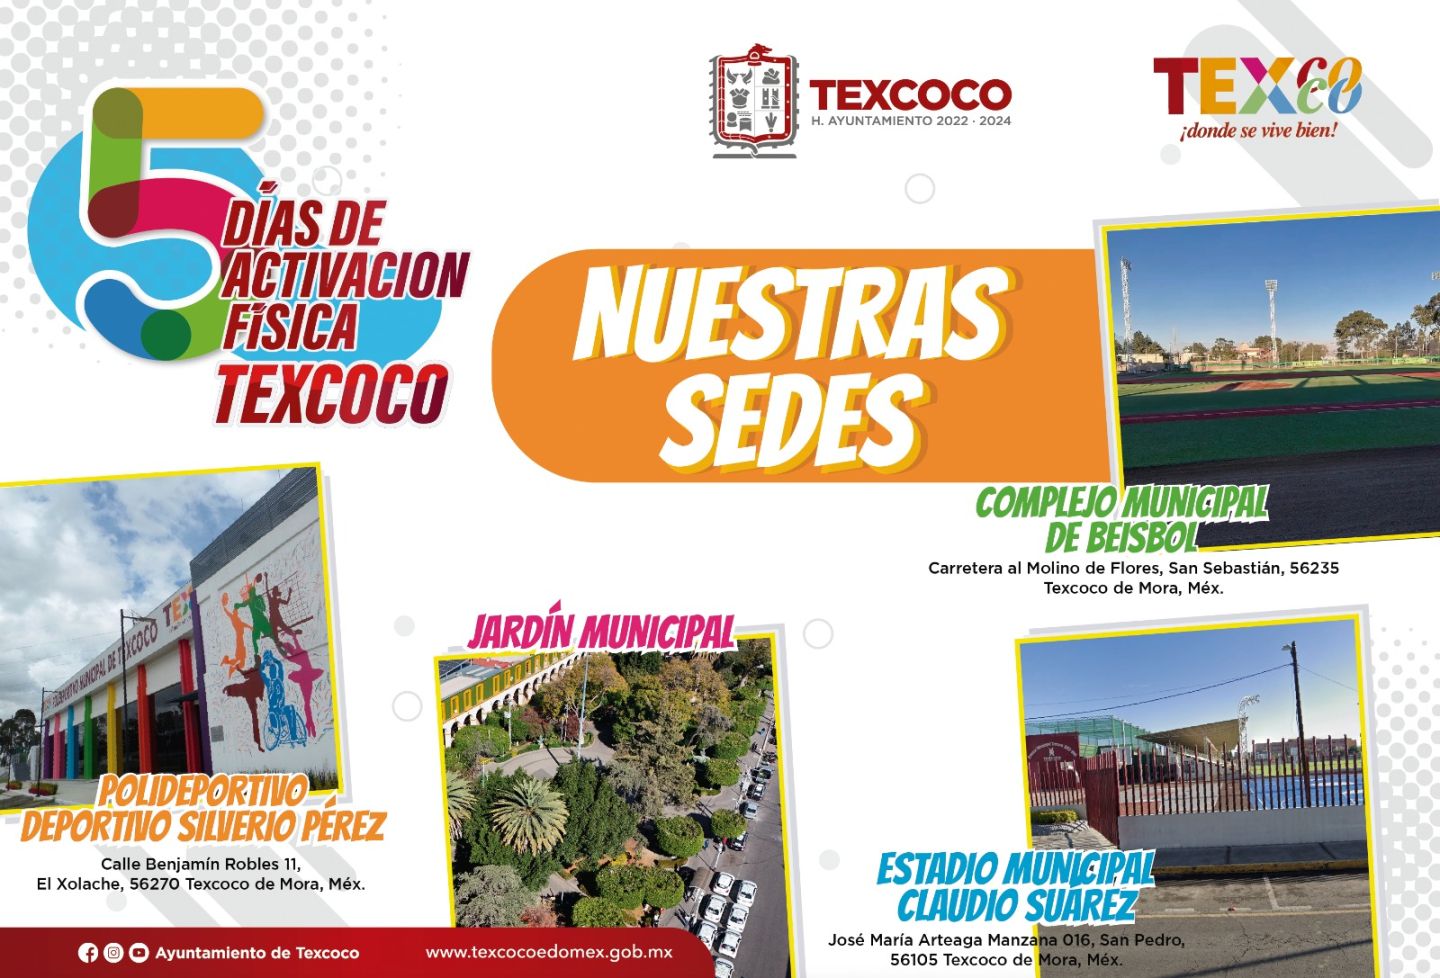 Convoca gobierno de Texcoco a participar este mes de febrero en activación física 